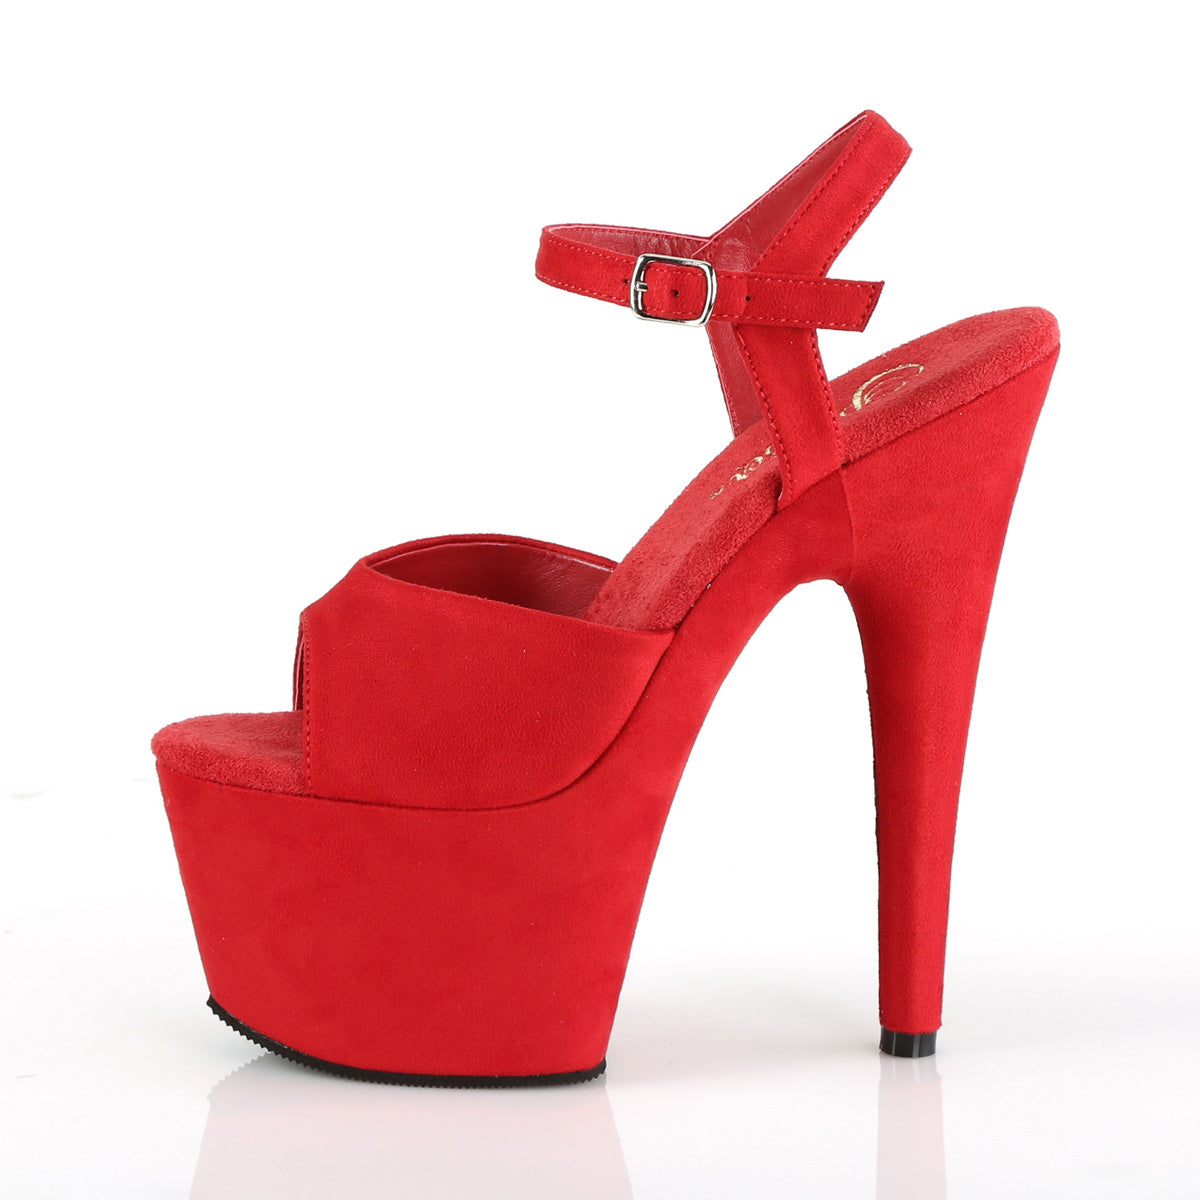 Pleaser Sandales pour femmes ADORE-709FS rouge en faux daim / daim rouge rouge